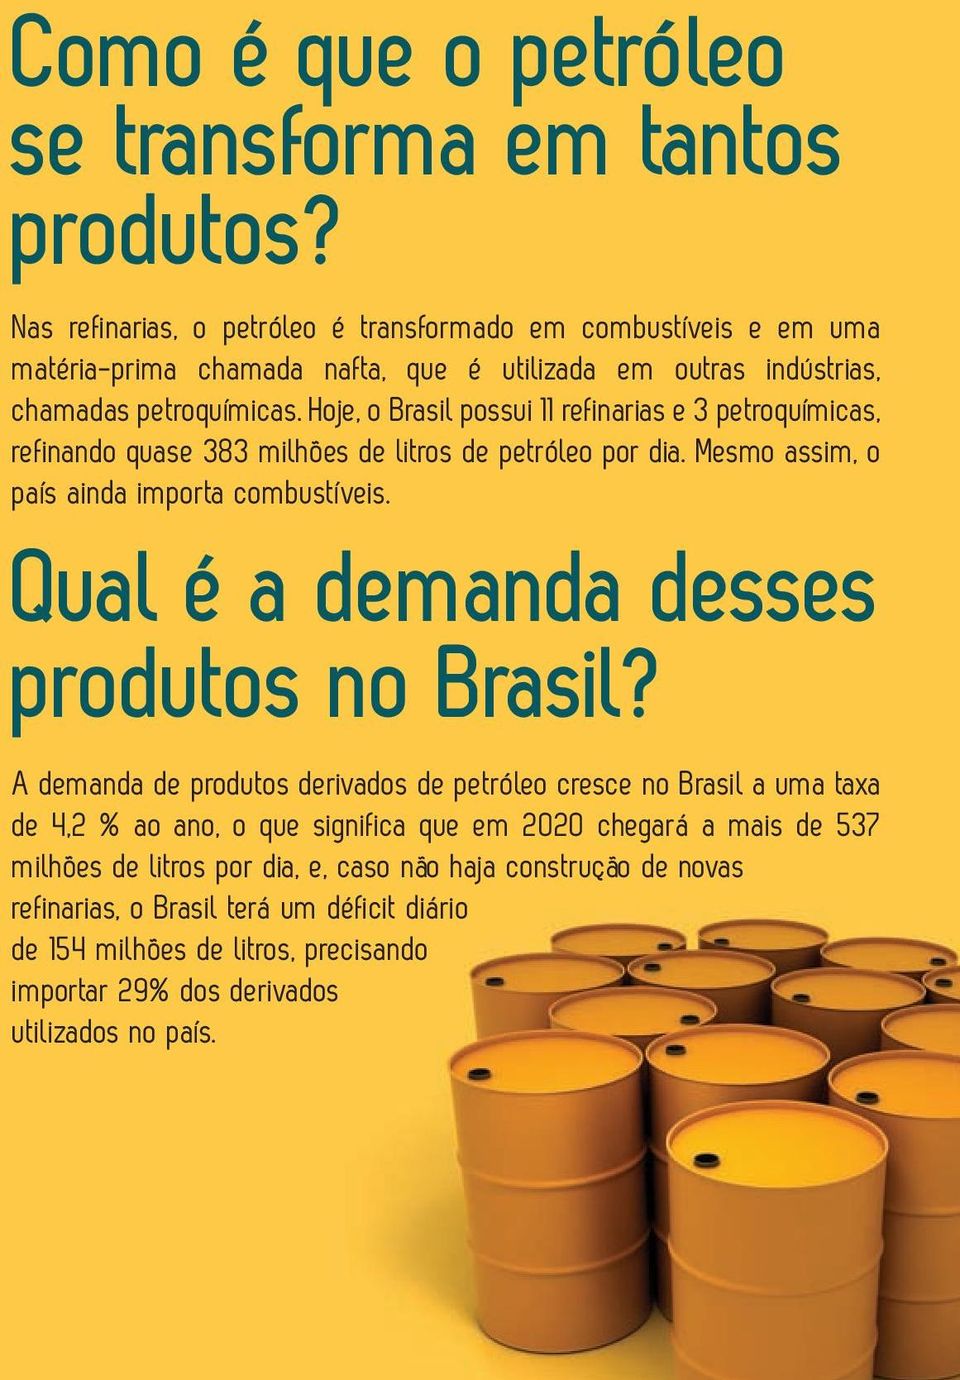 Hoje, o Brasil possui 11 refinarias e 3 petroquímicas, refinando quase 383 milhões de litros de petróleo por dia. Mesmo assim, o país ainda importa combustíveis.